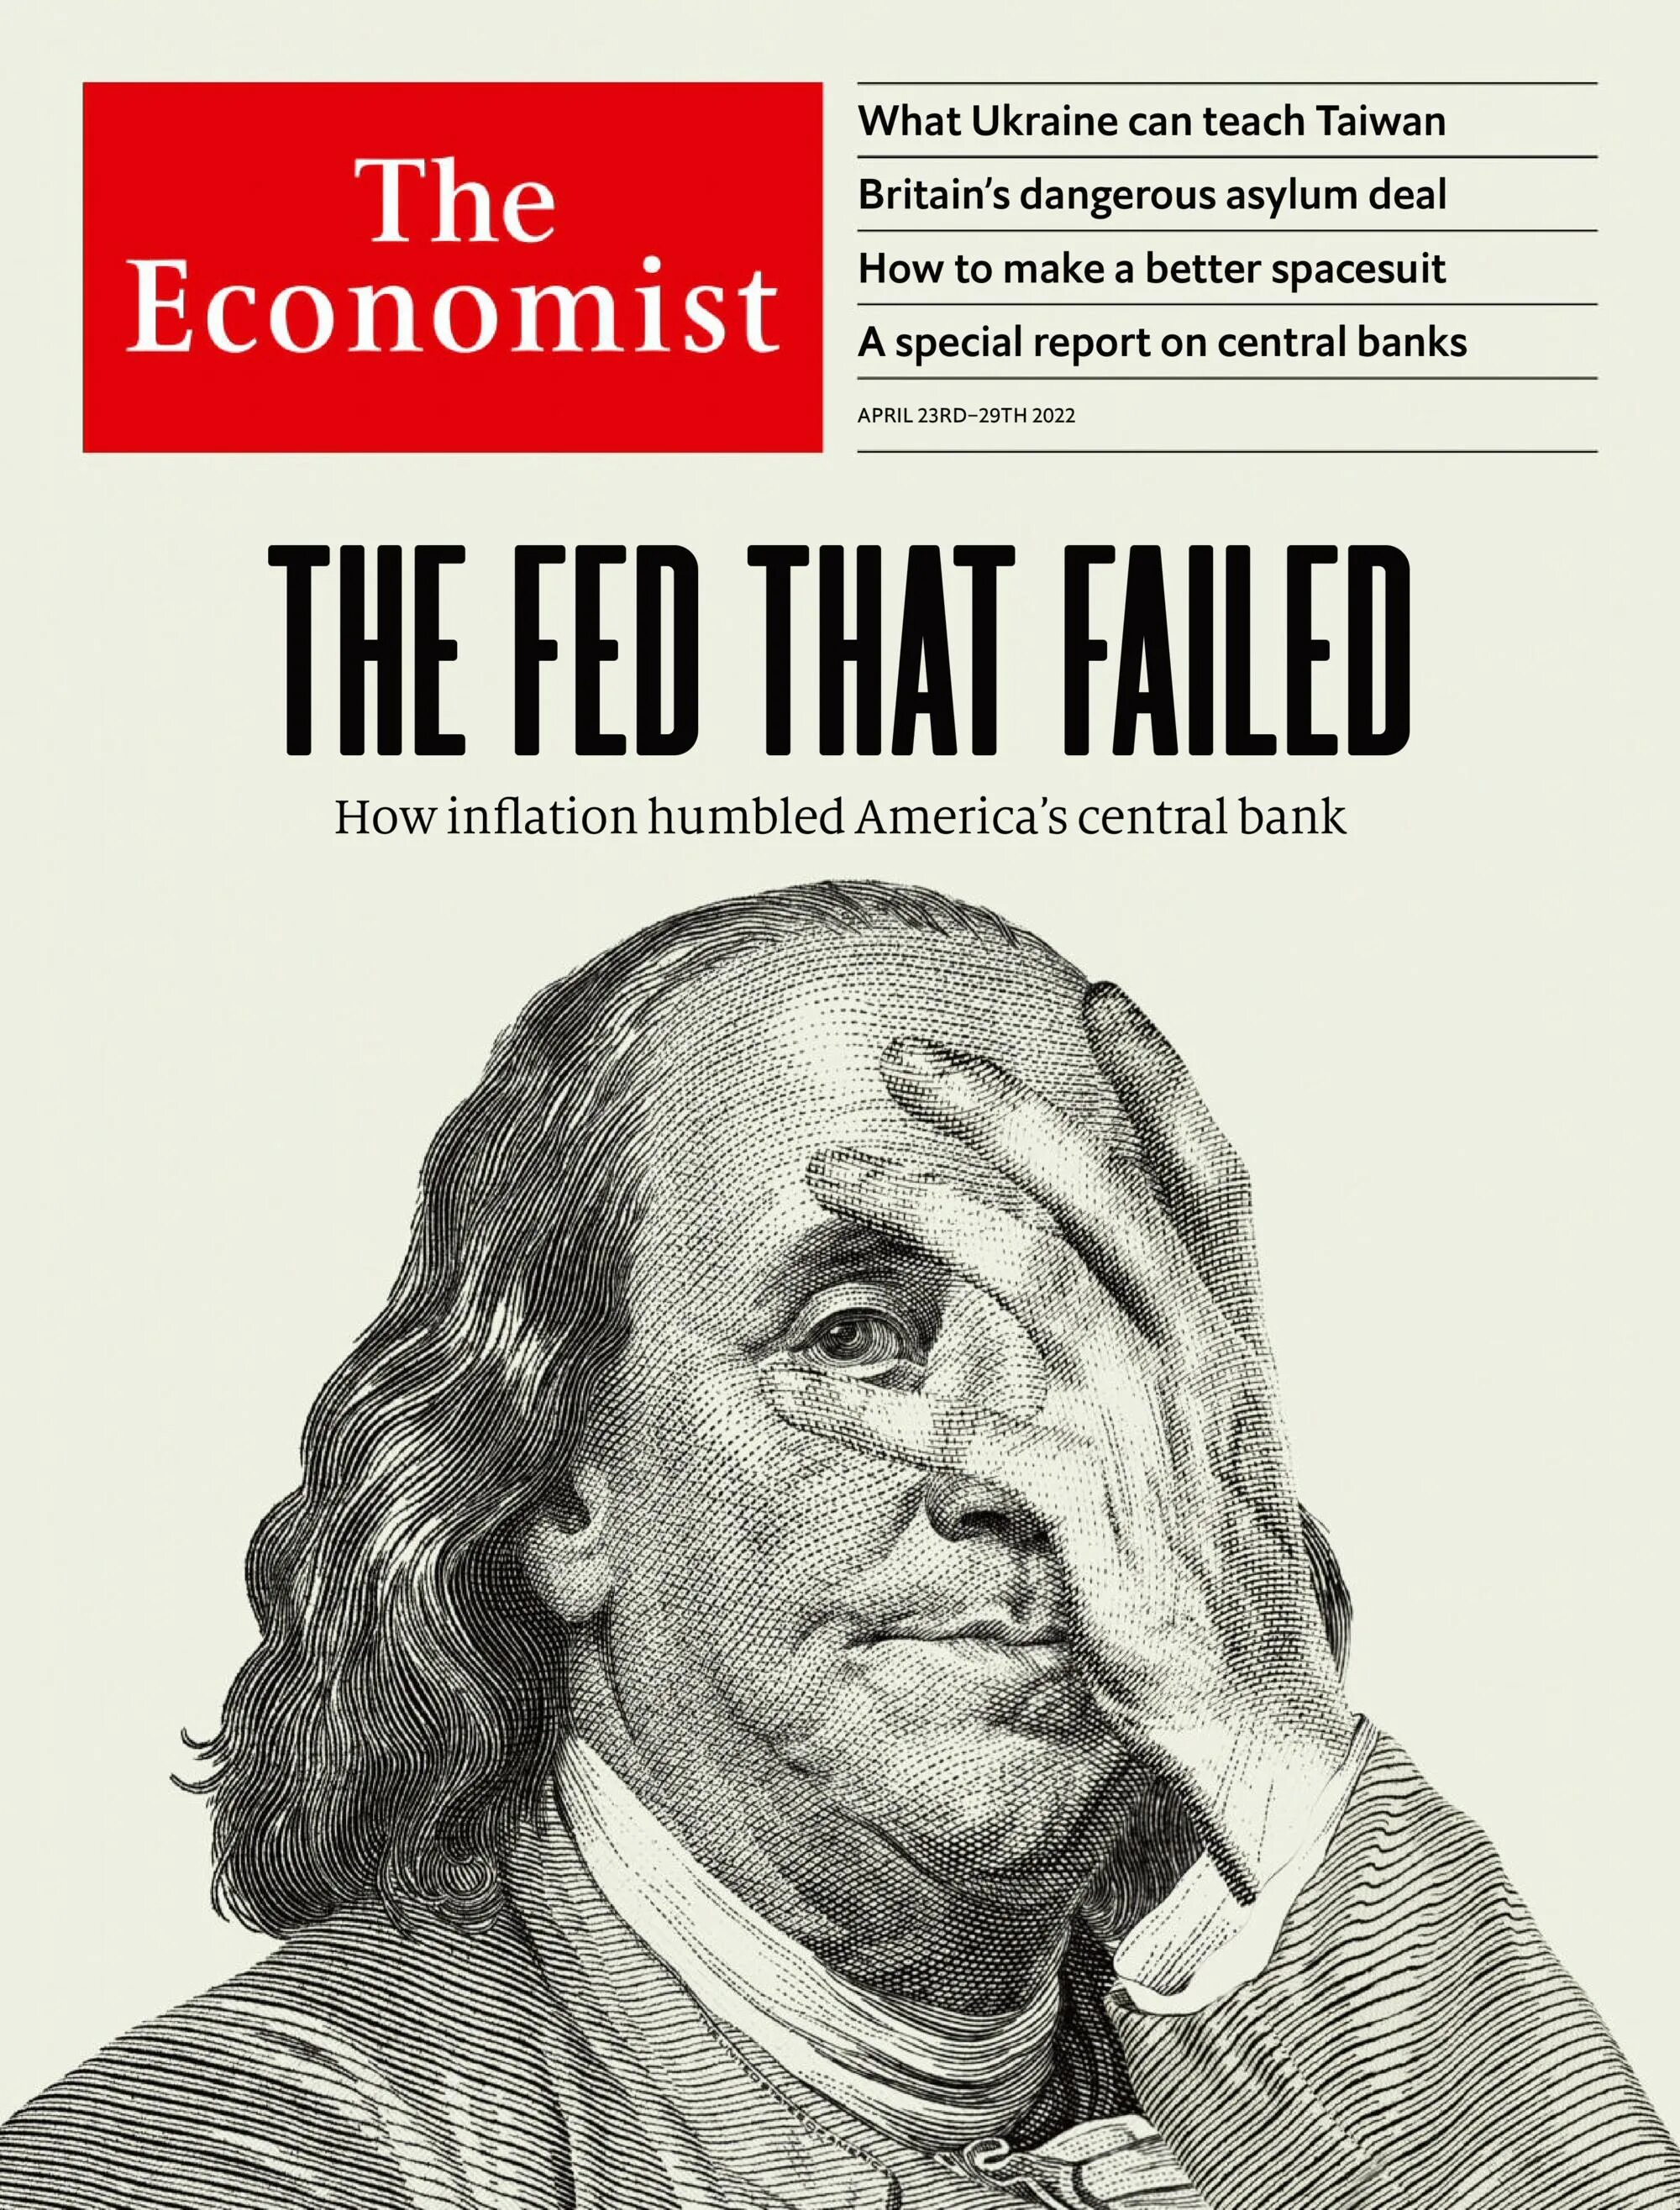 Обложка журнала экономист 2022. Журнал экономист апрель 2022 обложка. Ве экономист обложка на 2022. Обложка the Economist обложка 2022.